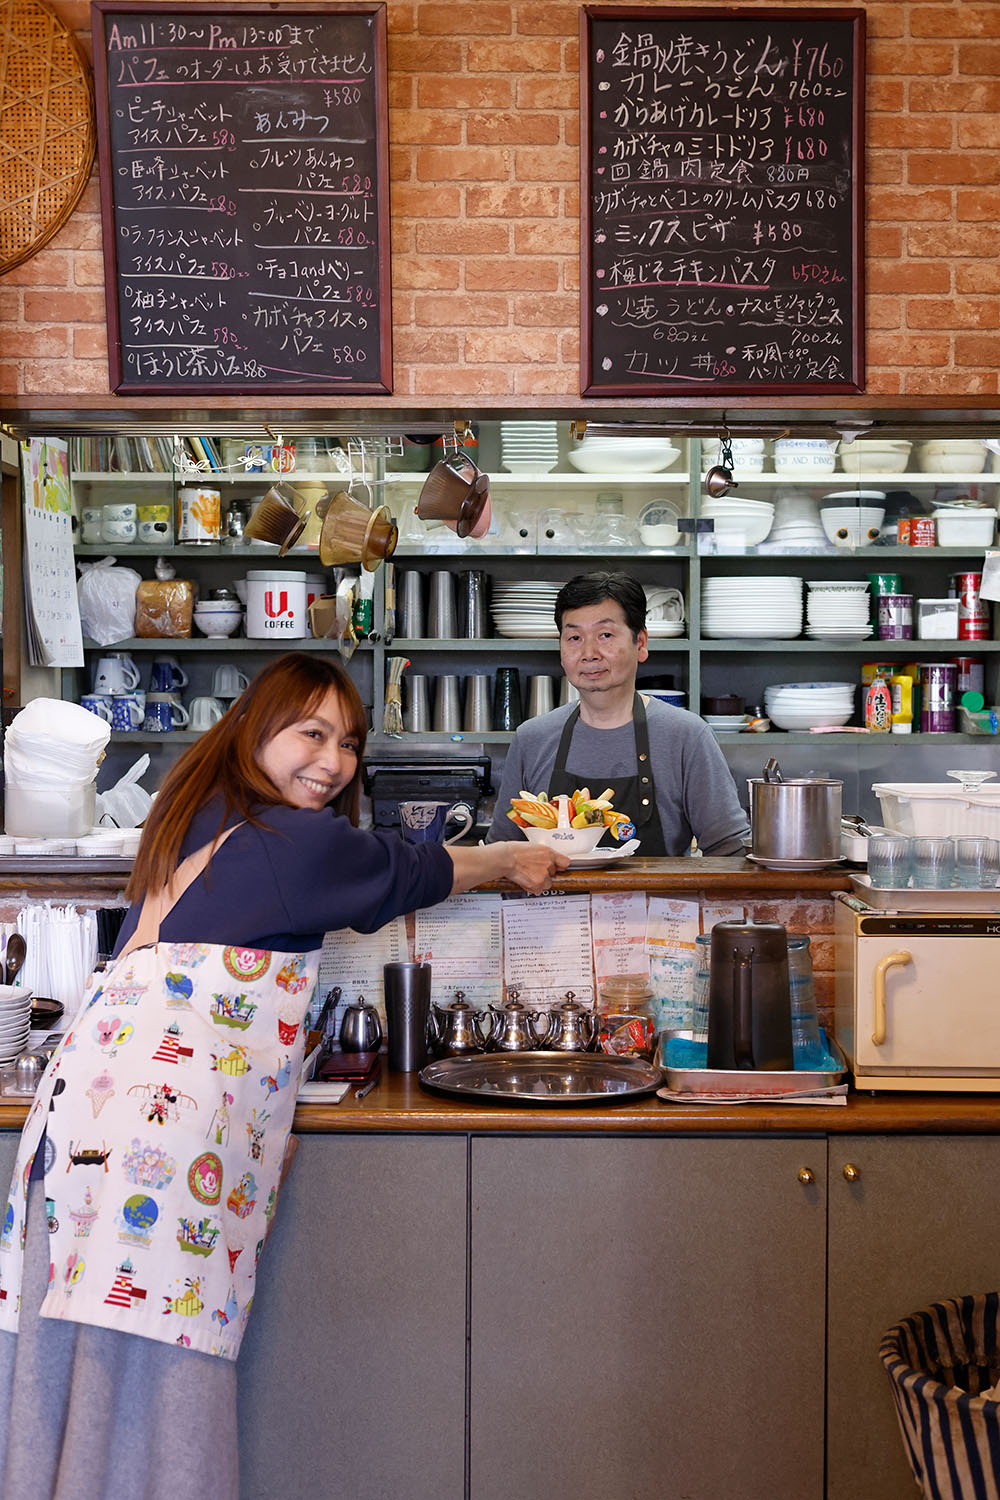 16歳でバイトを始めて以来、喫茶道を歩むマスターいわく「食事目当てが多いです」。熟練スタッフの加藤正美さんと。